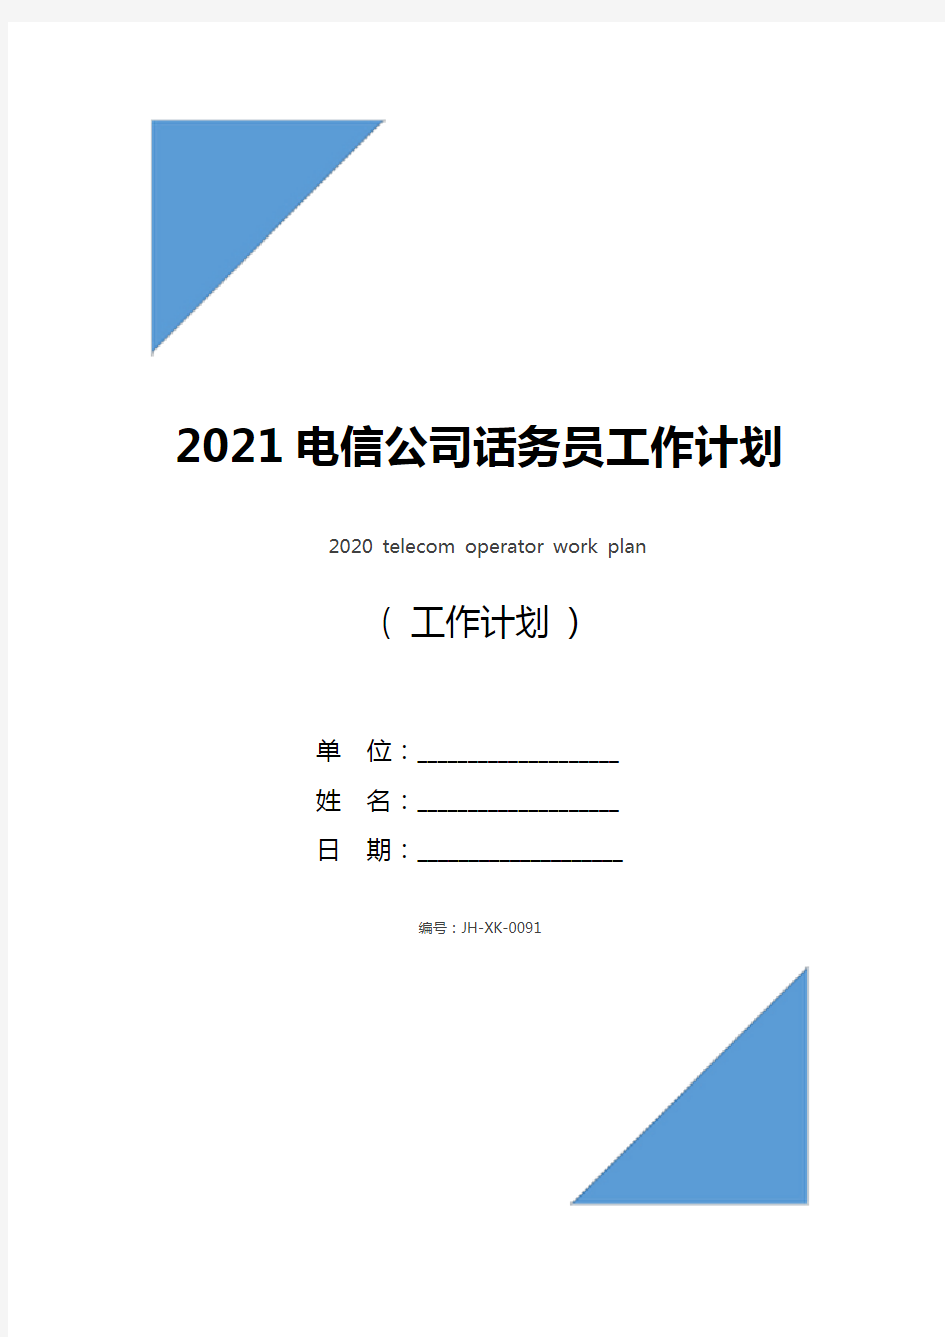 2021电信公司话务员工作计划(最新版)